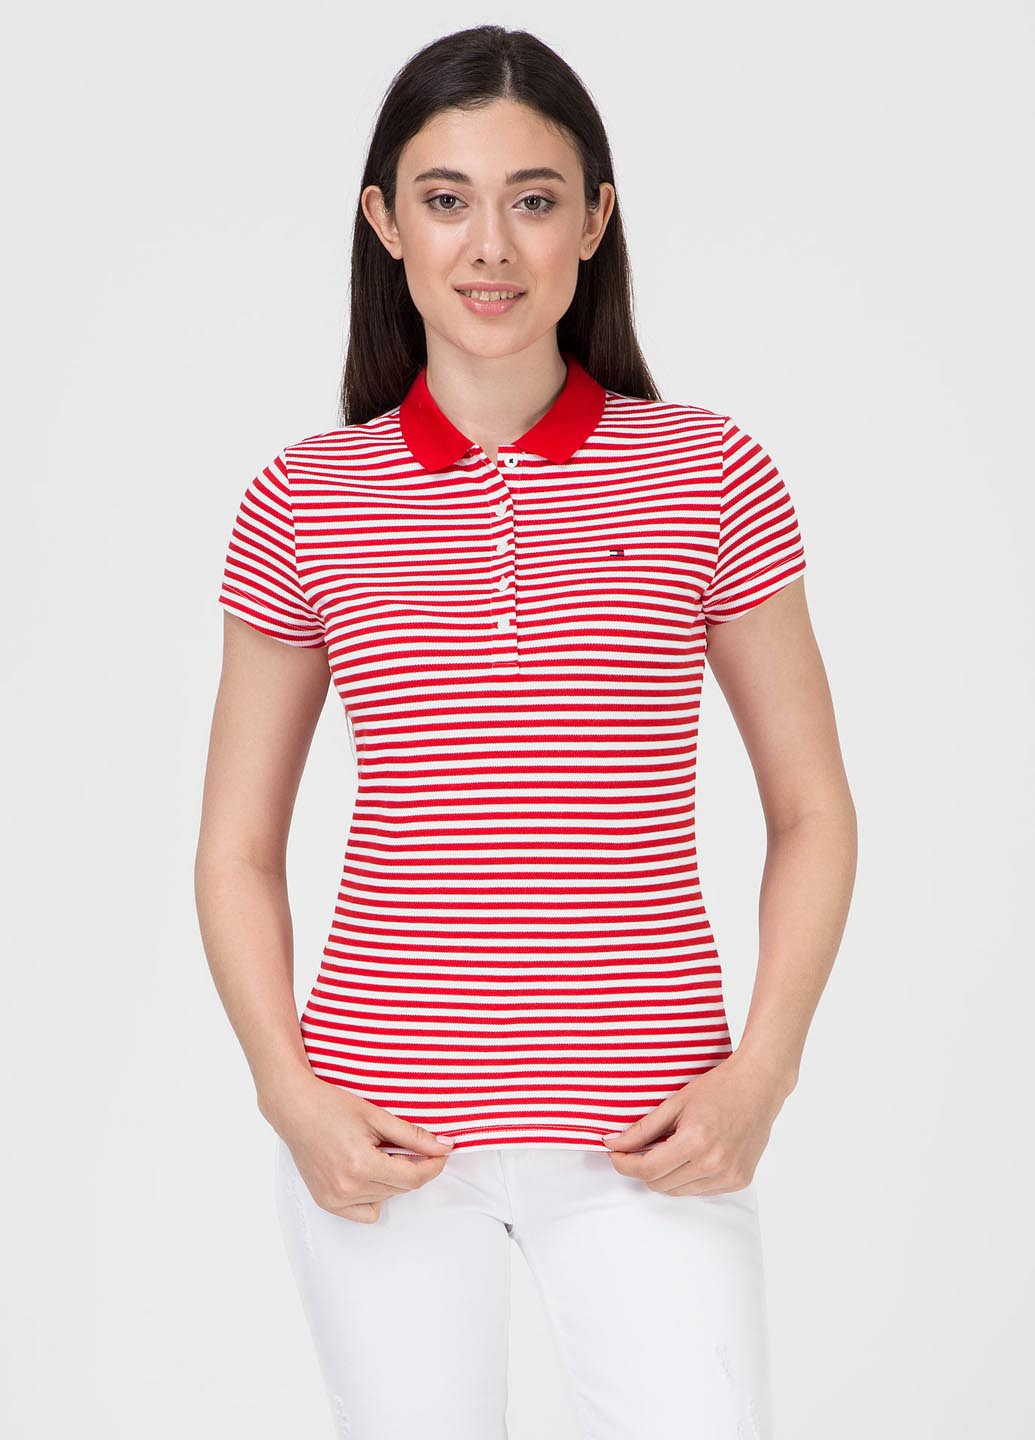 Красная женская футболка-поло Tommy Hilfiger в полоску